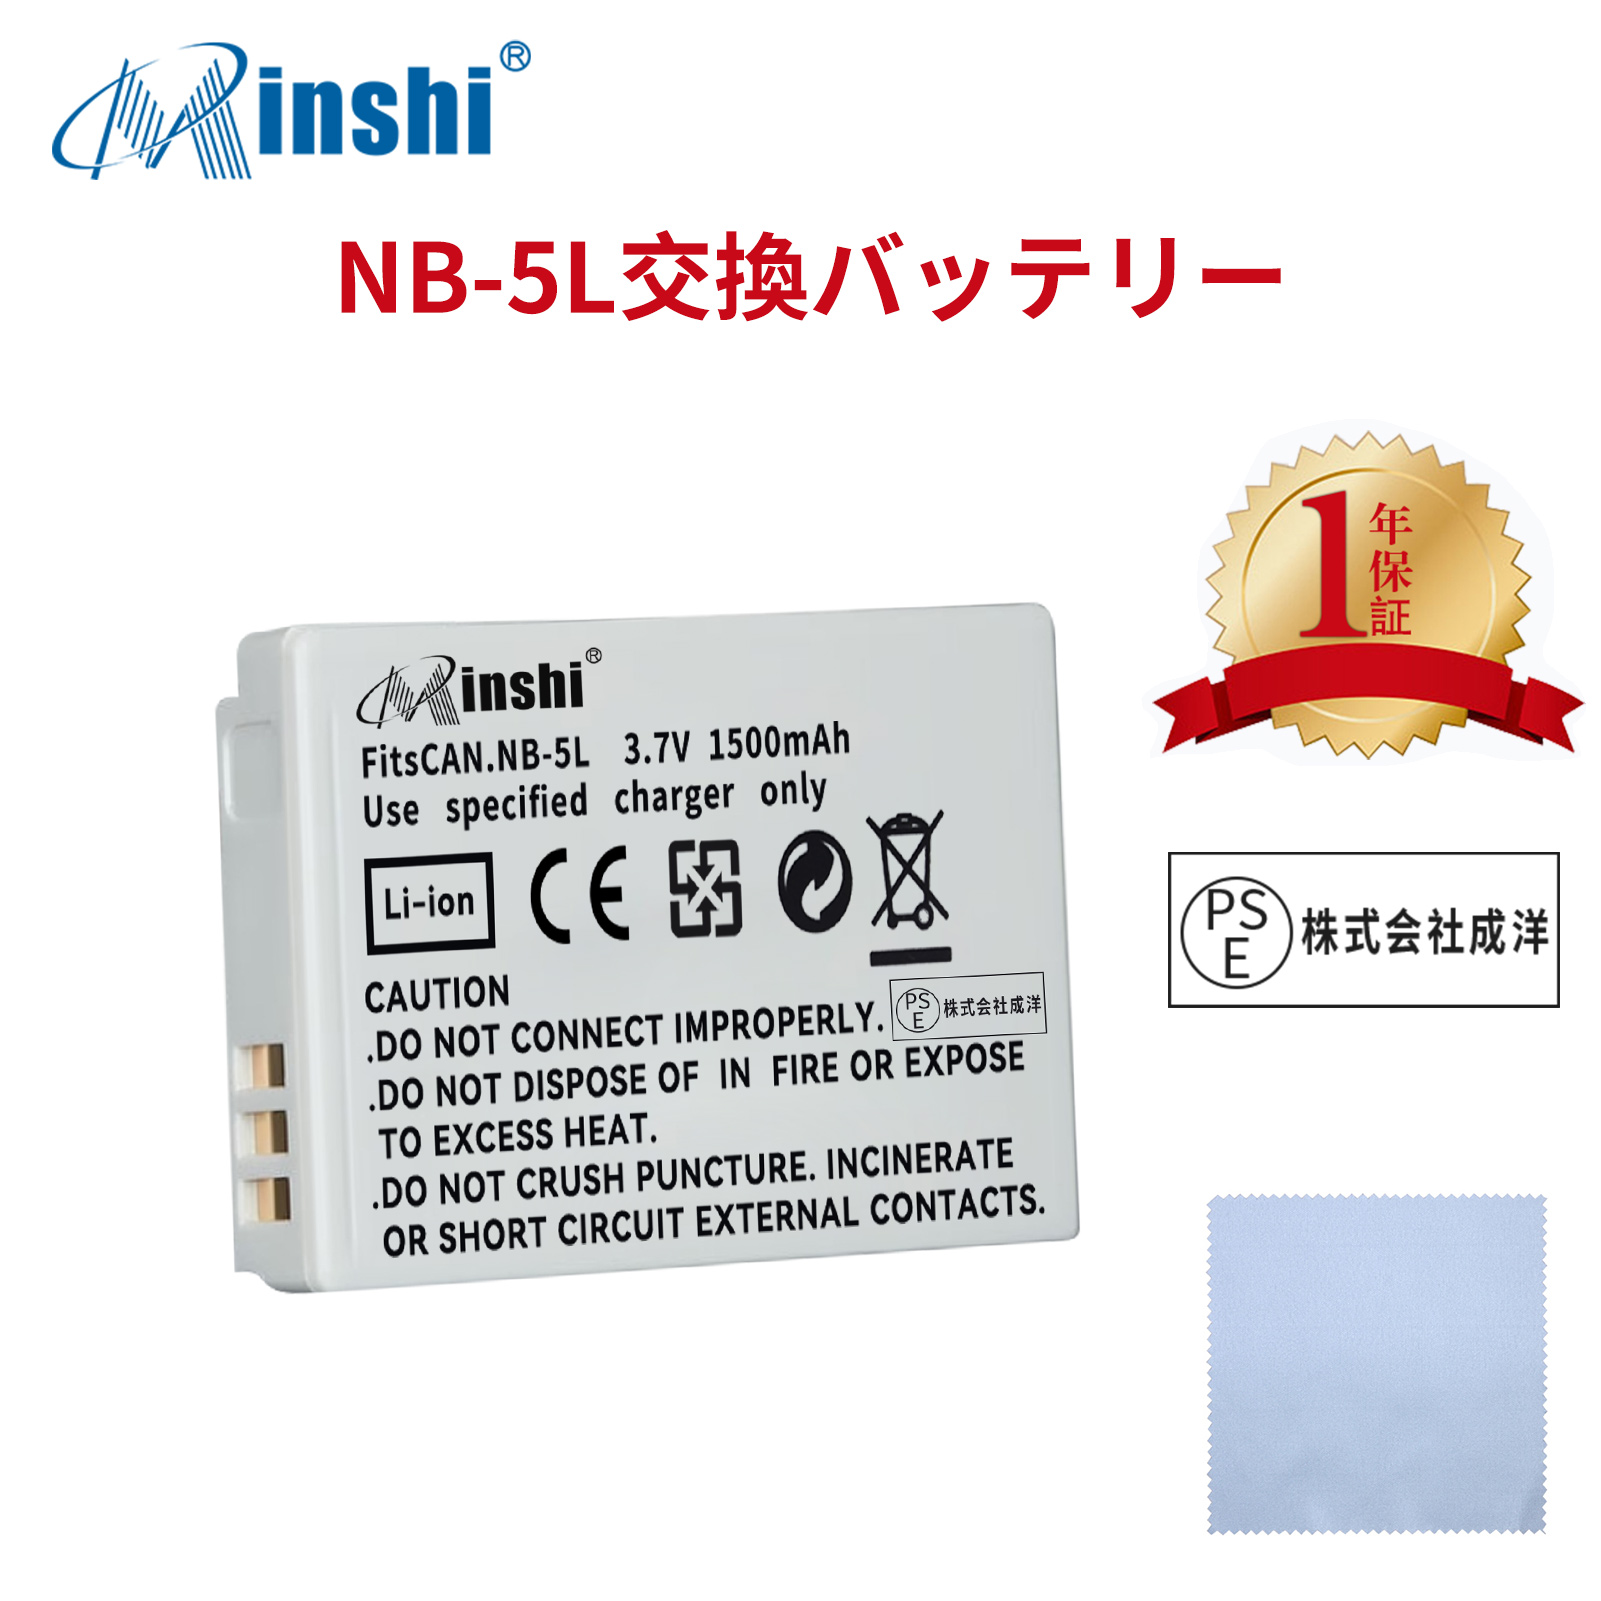 【清潔布ー付】minshi CANON 910IS S100  【1500mAh 3.7V】PSE認定済 高品質 NB-5L 交換用バッテリー